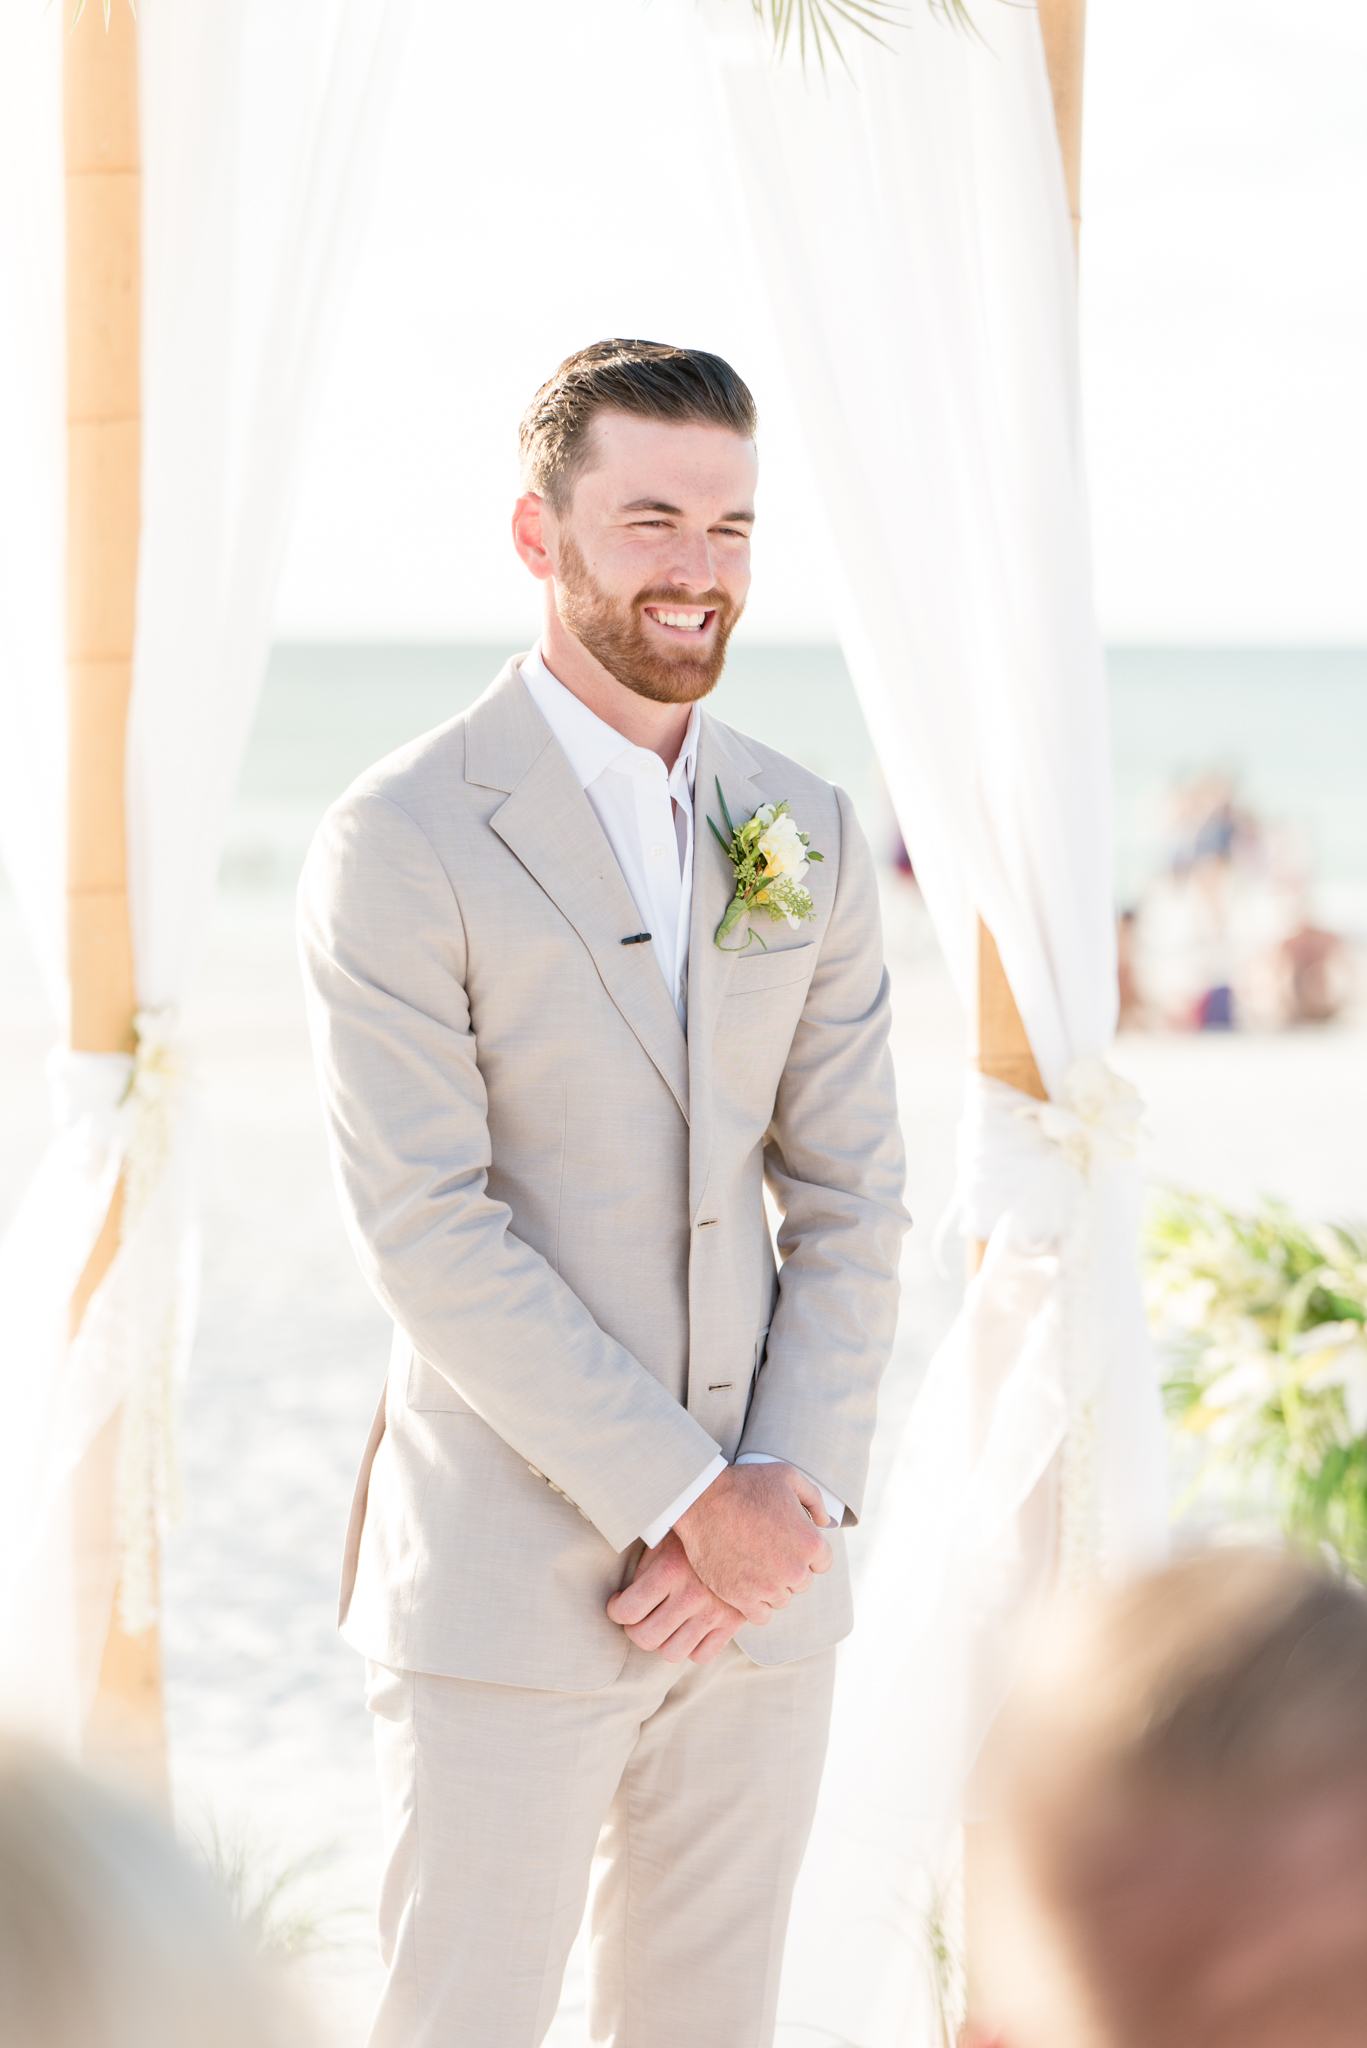 Groom smiles as bride walks down aisle.